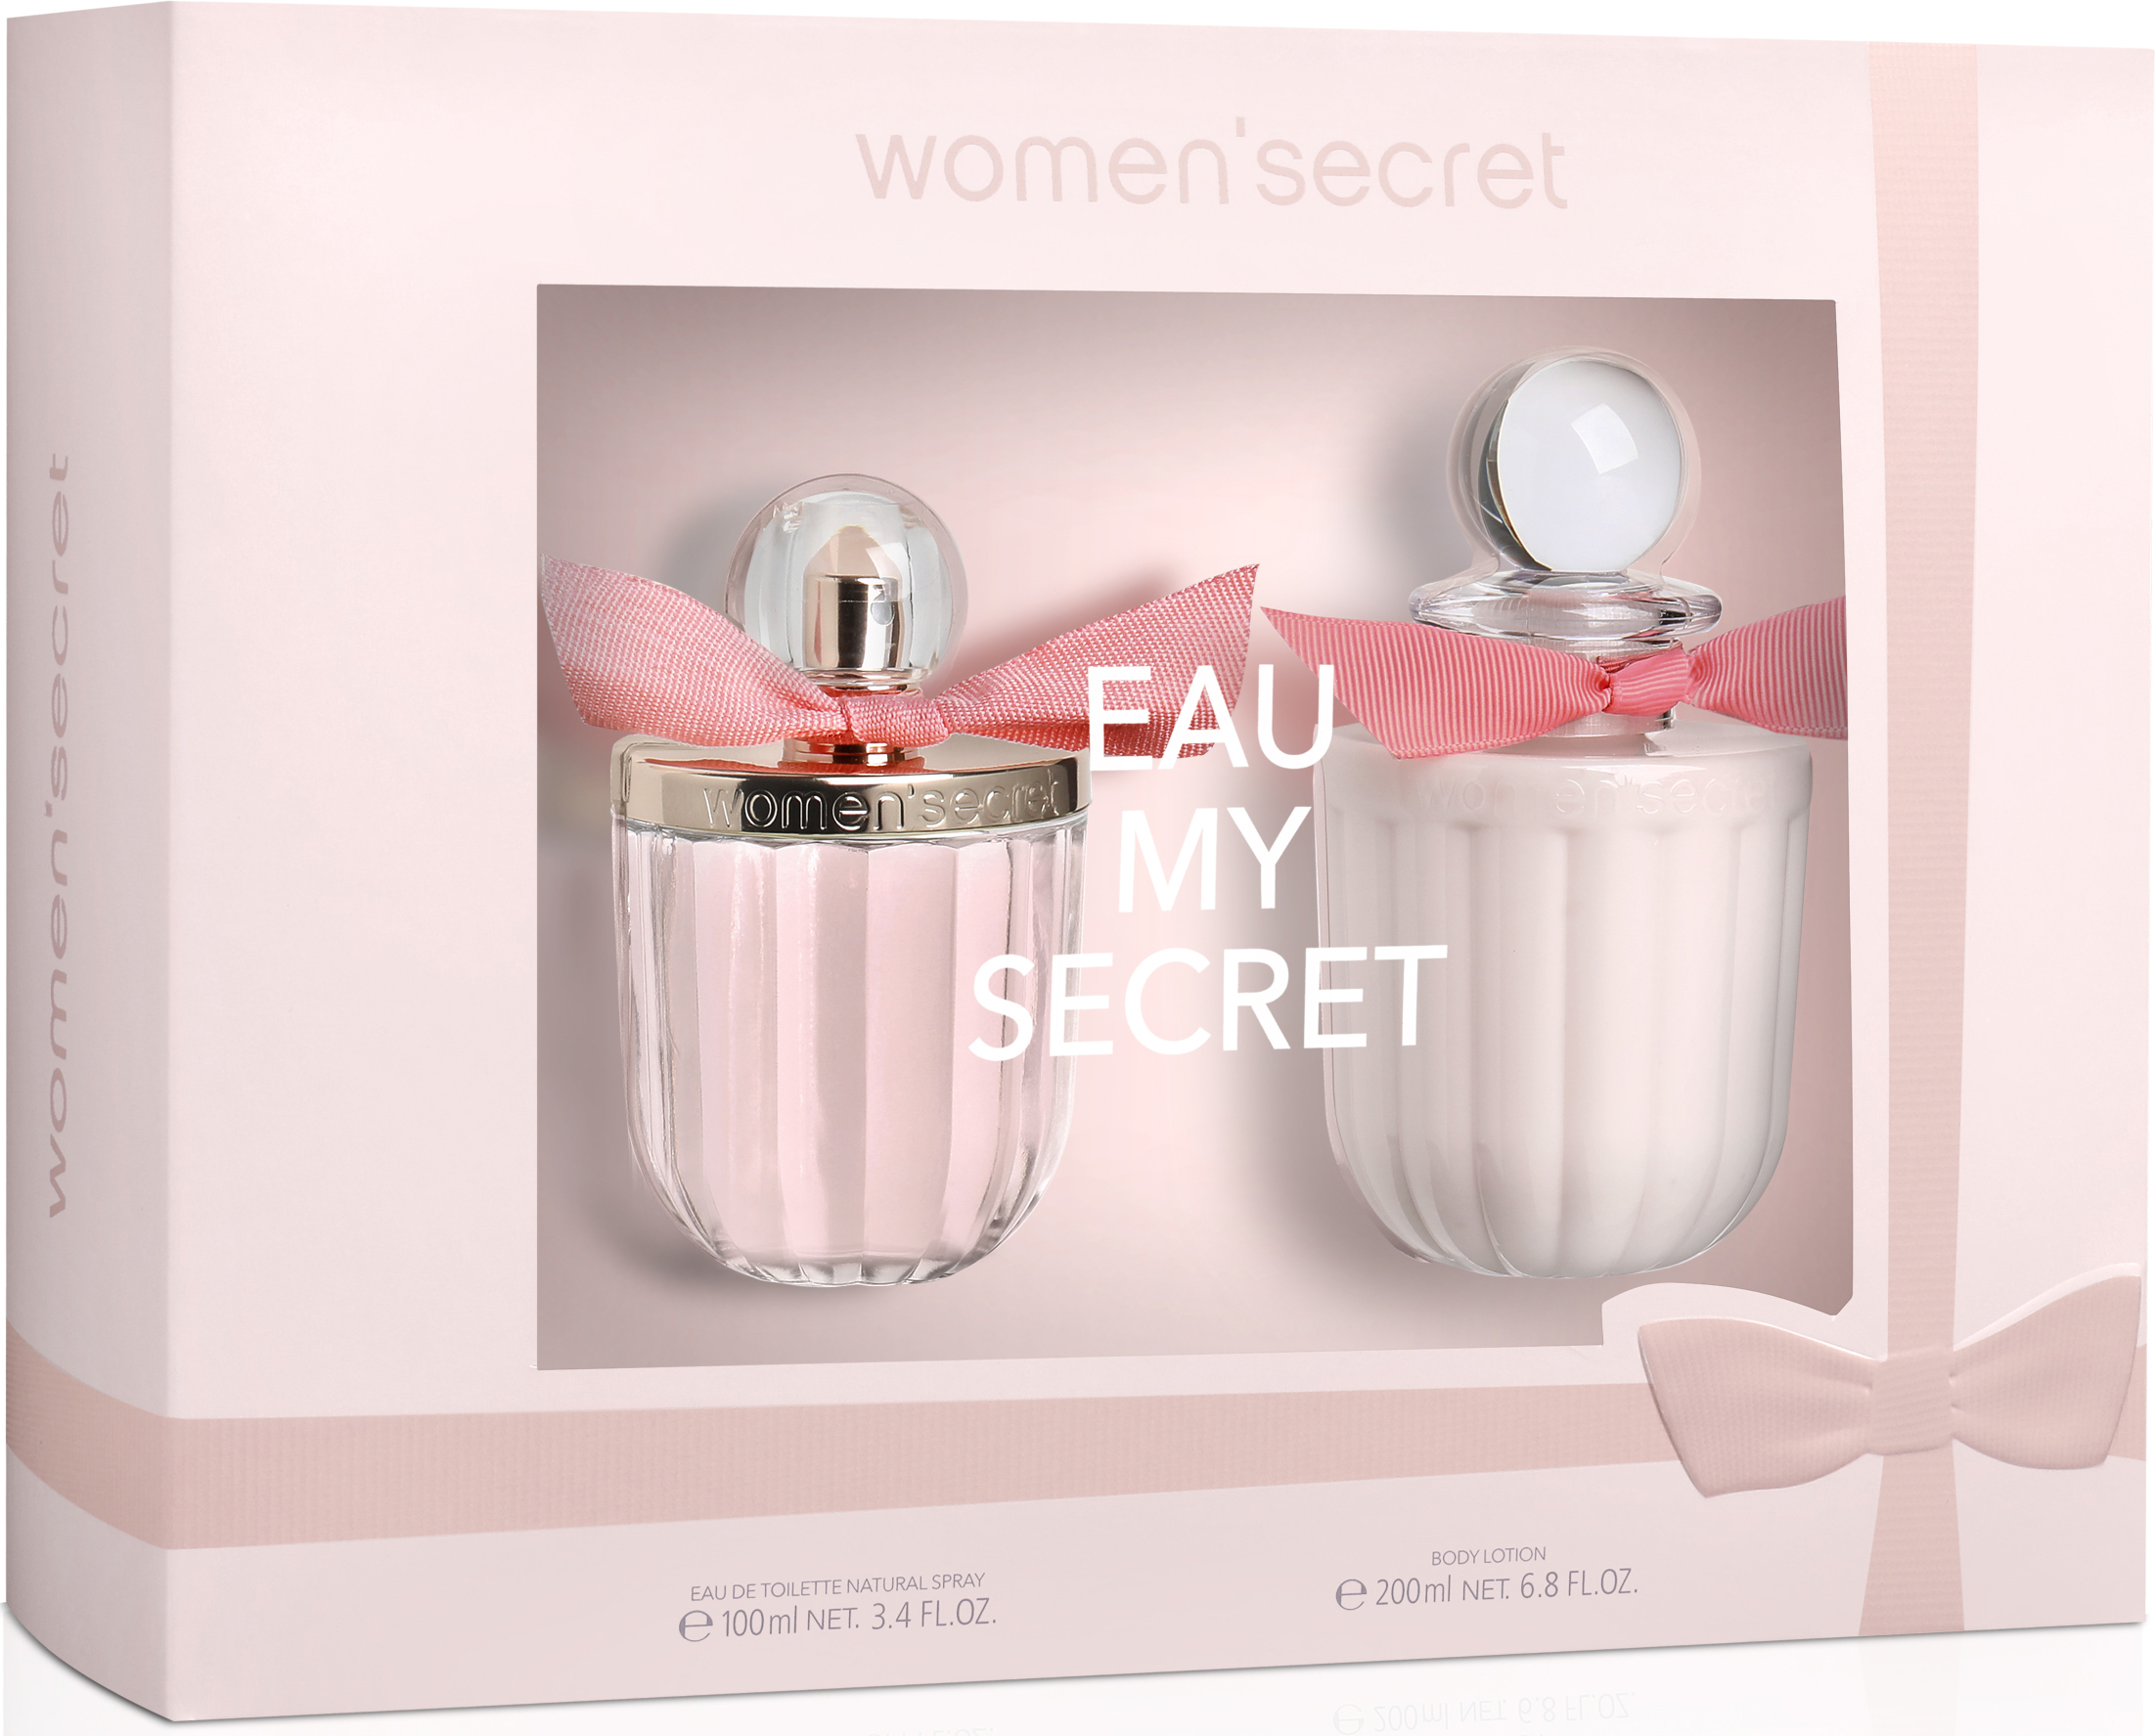 Women'secret Eau My Secret Gift Set